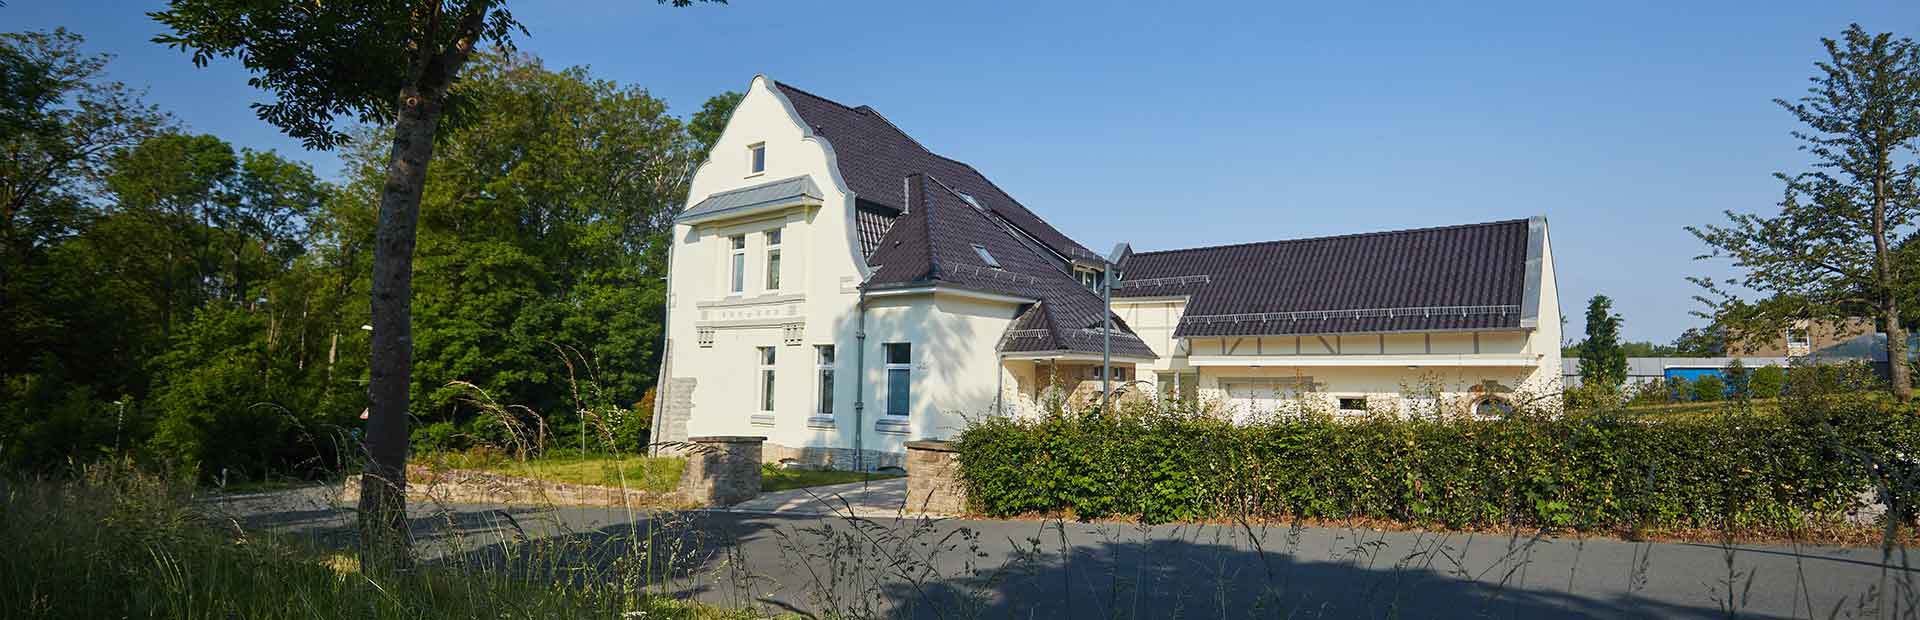 Fassadensanierung, Fassadenanstrich und Malerarbeiten in Bad Münder